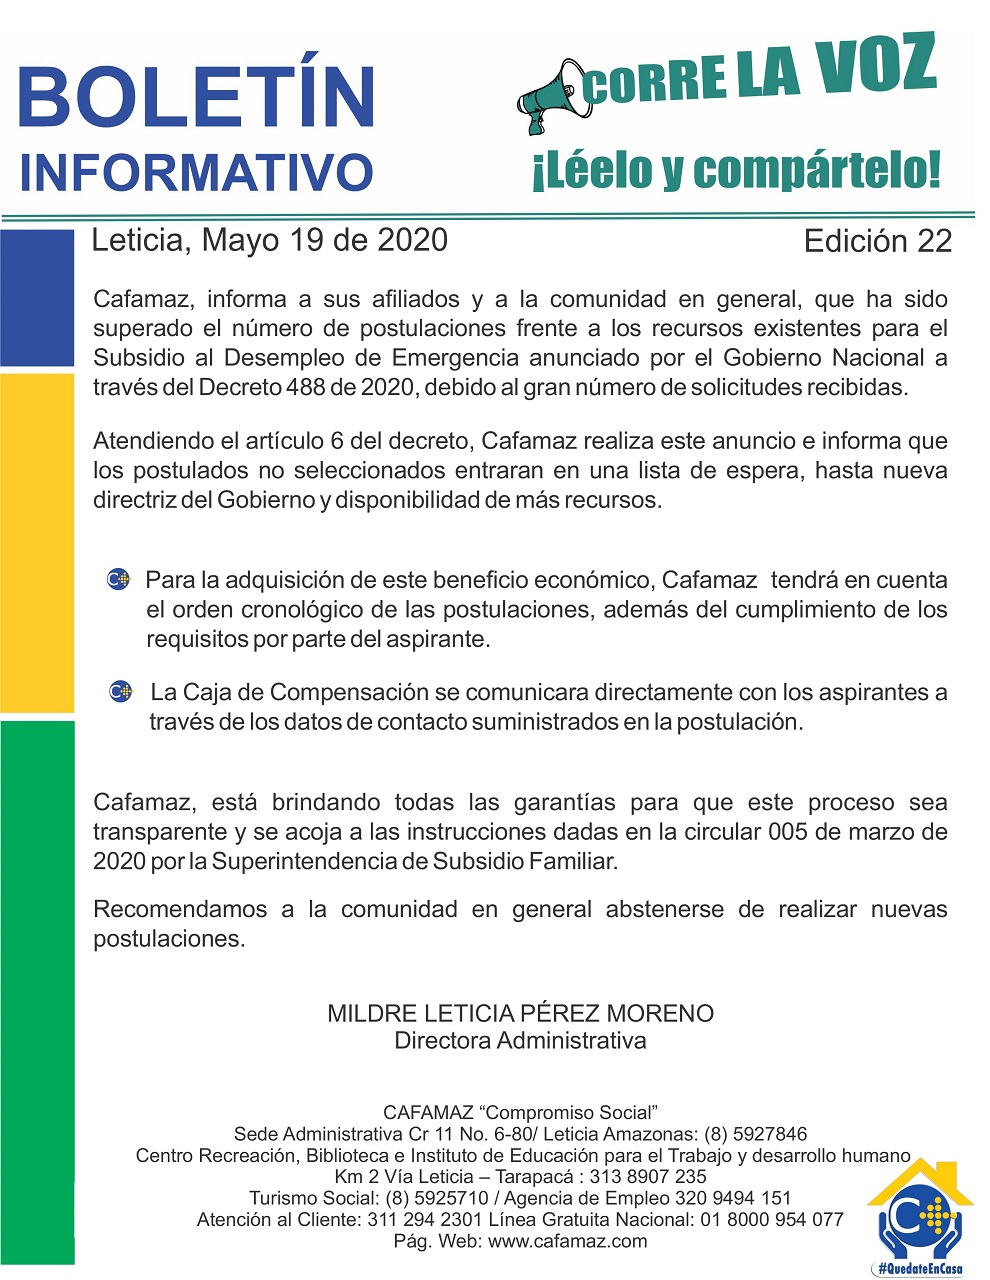 Boletín Informativo Edición 22 – LISTA DE ESPERA, SUBSIDIO DE EMERGENCIA AL DESEMPLEO | Cafamaz, 2020